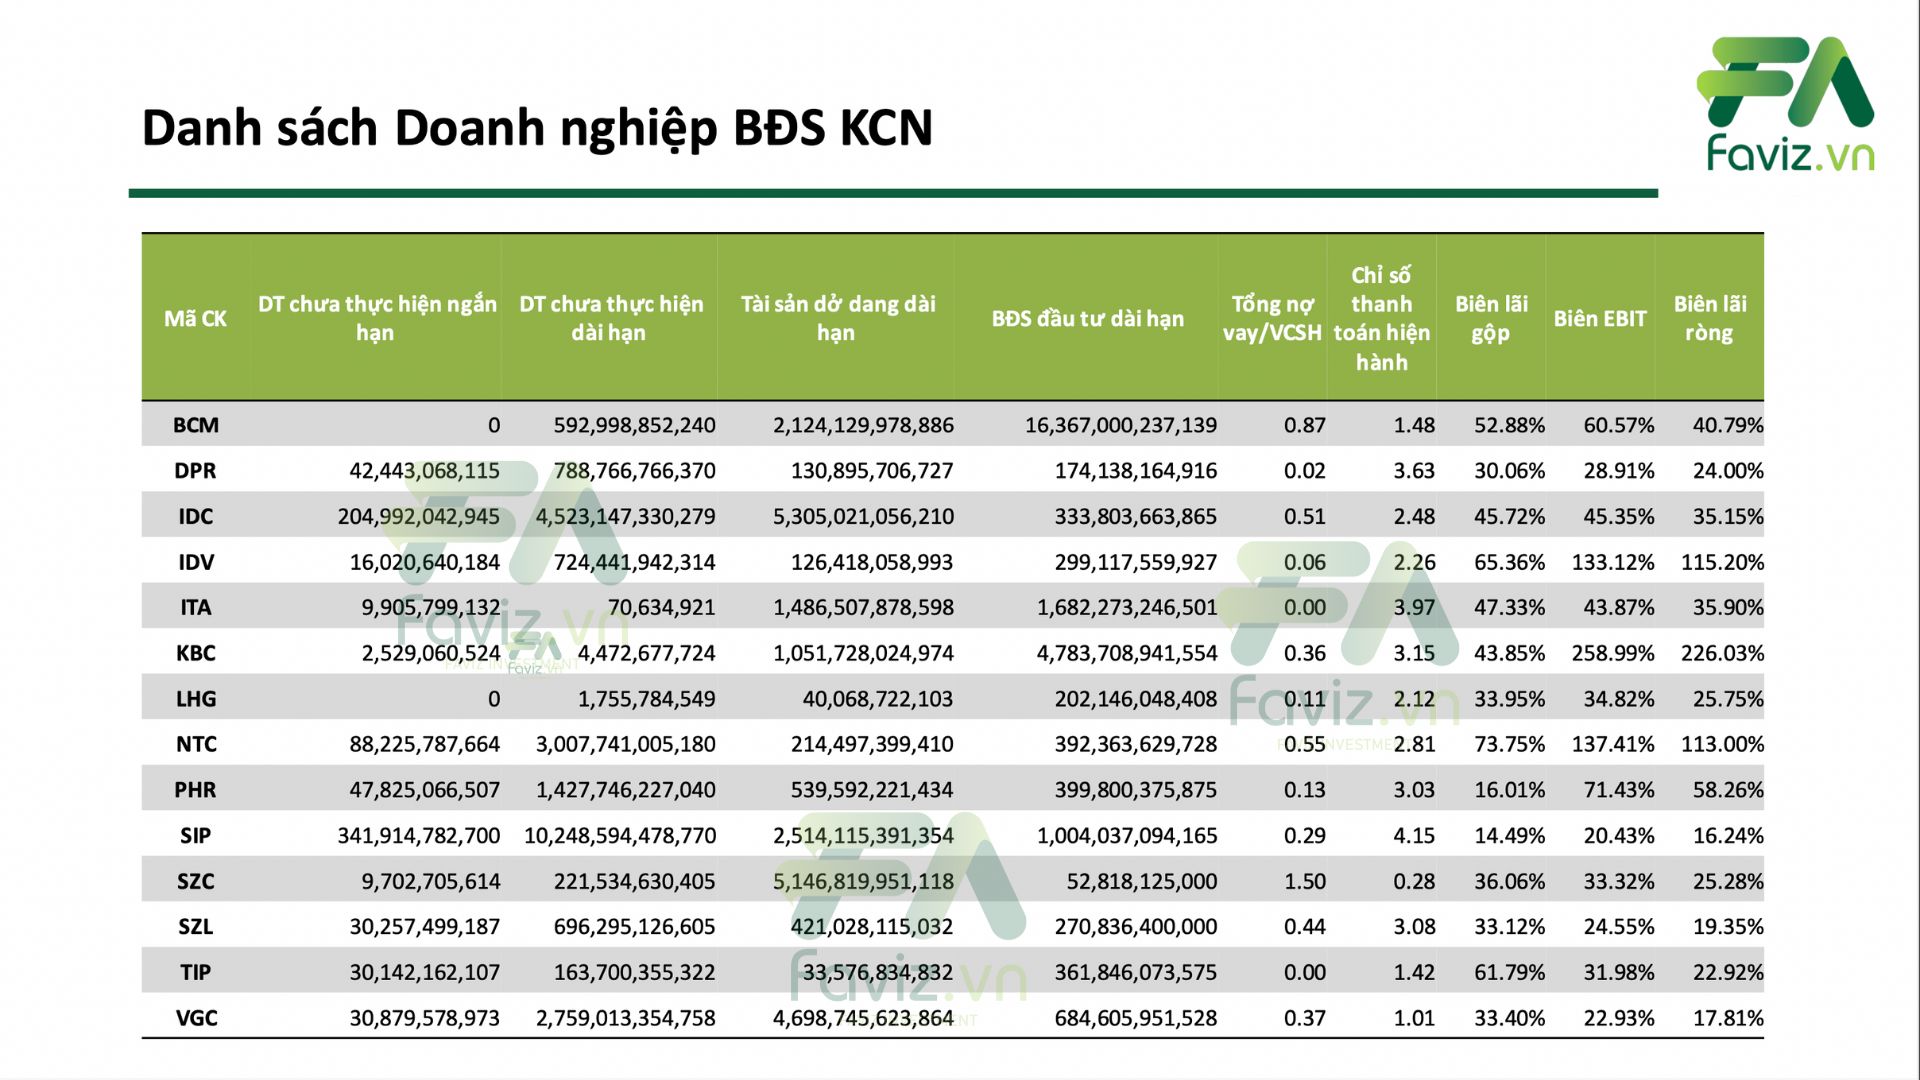 Suc khỏe tài chính BDS KCN